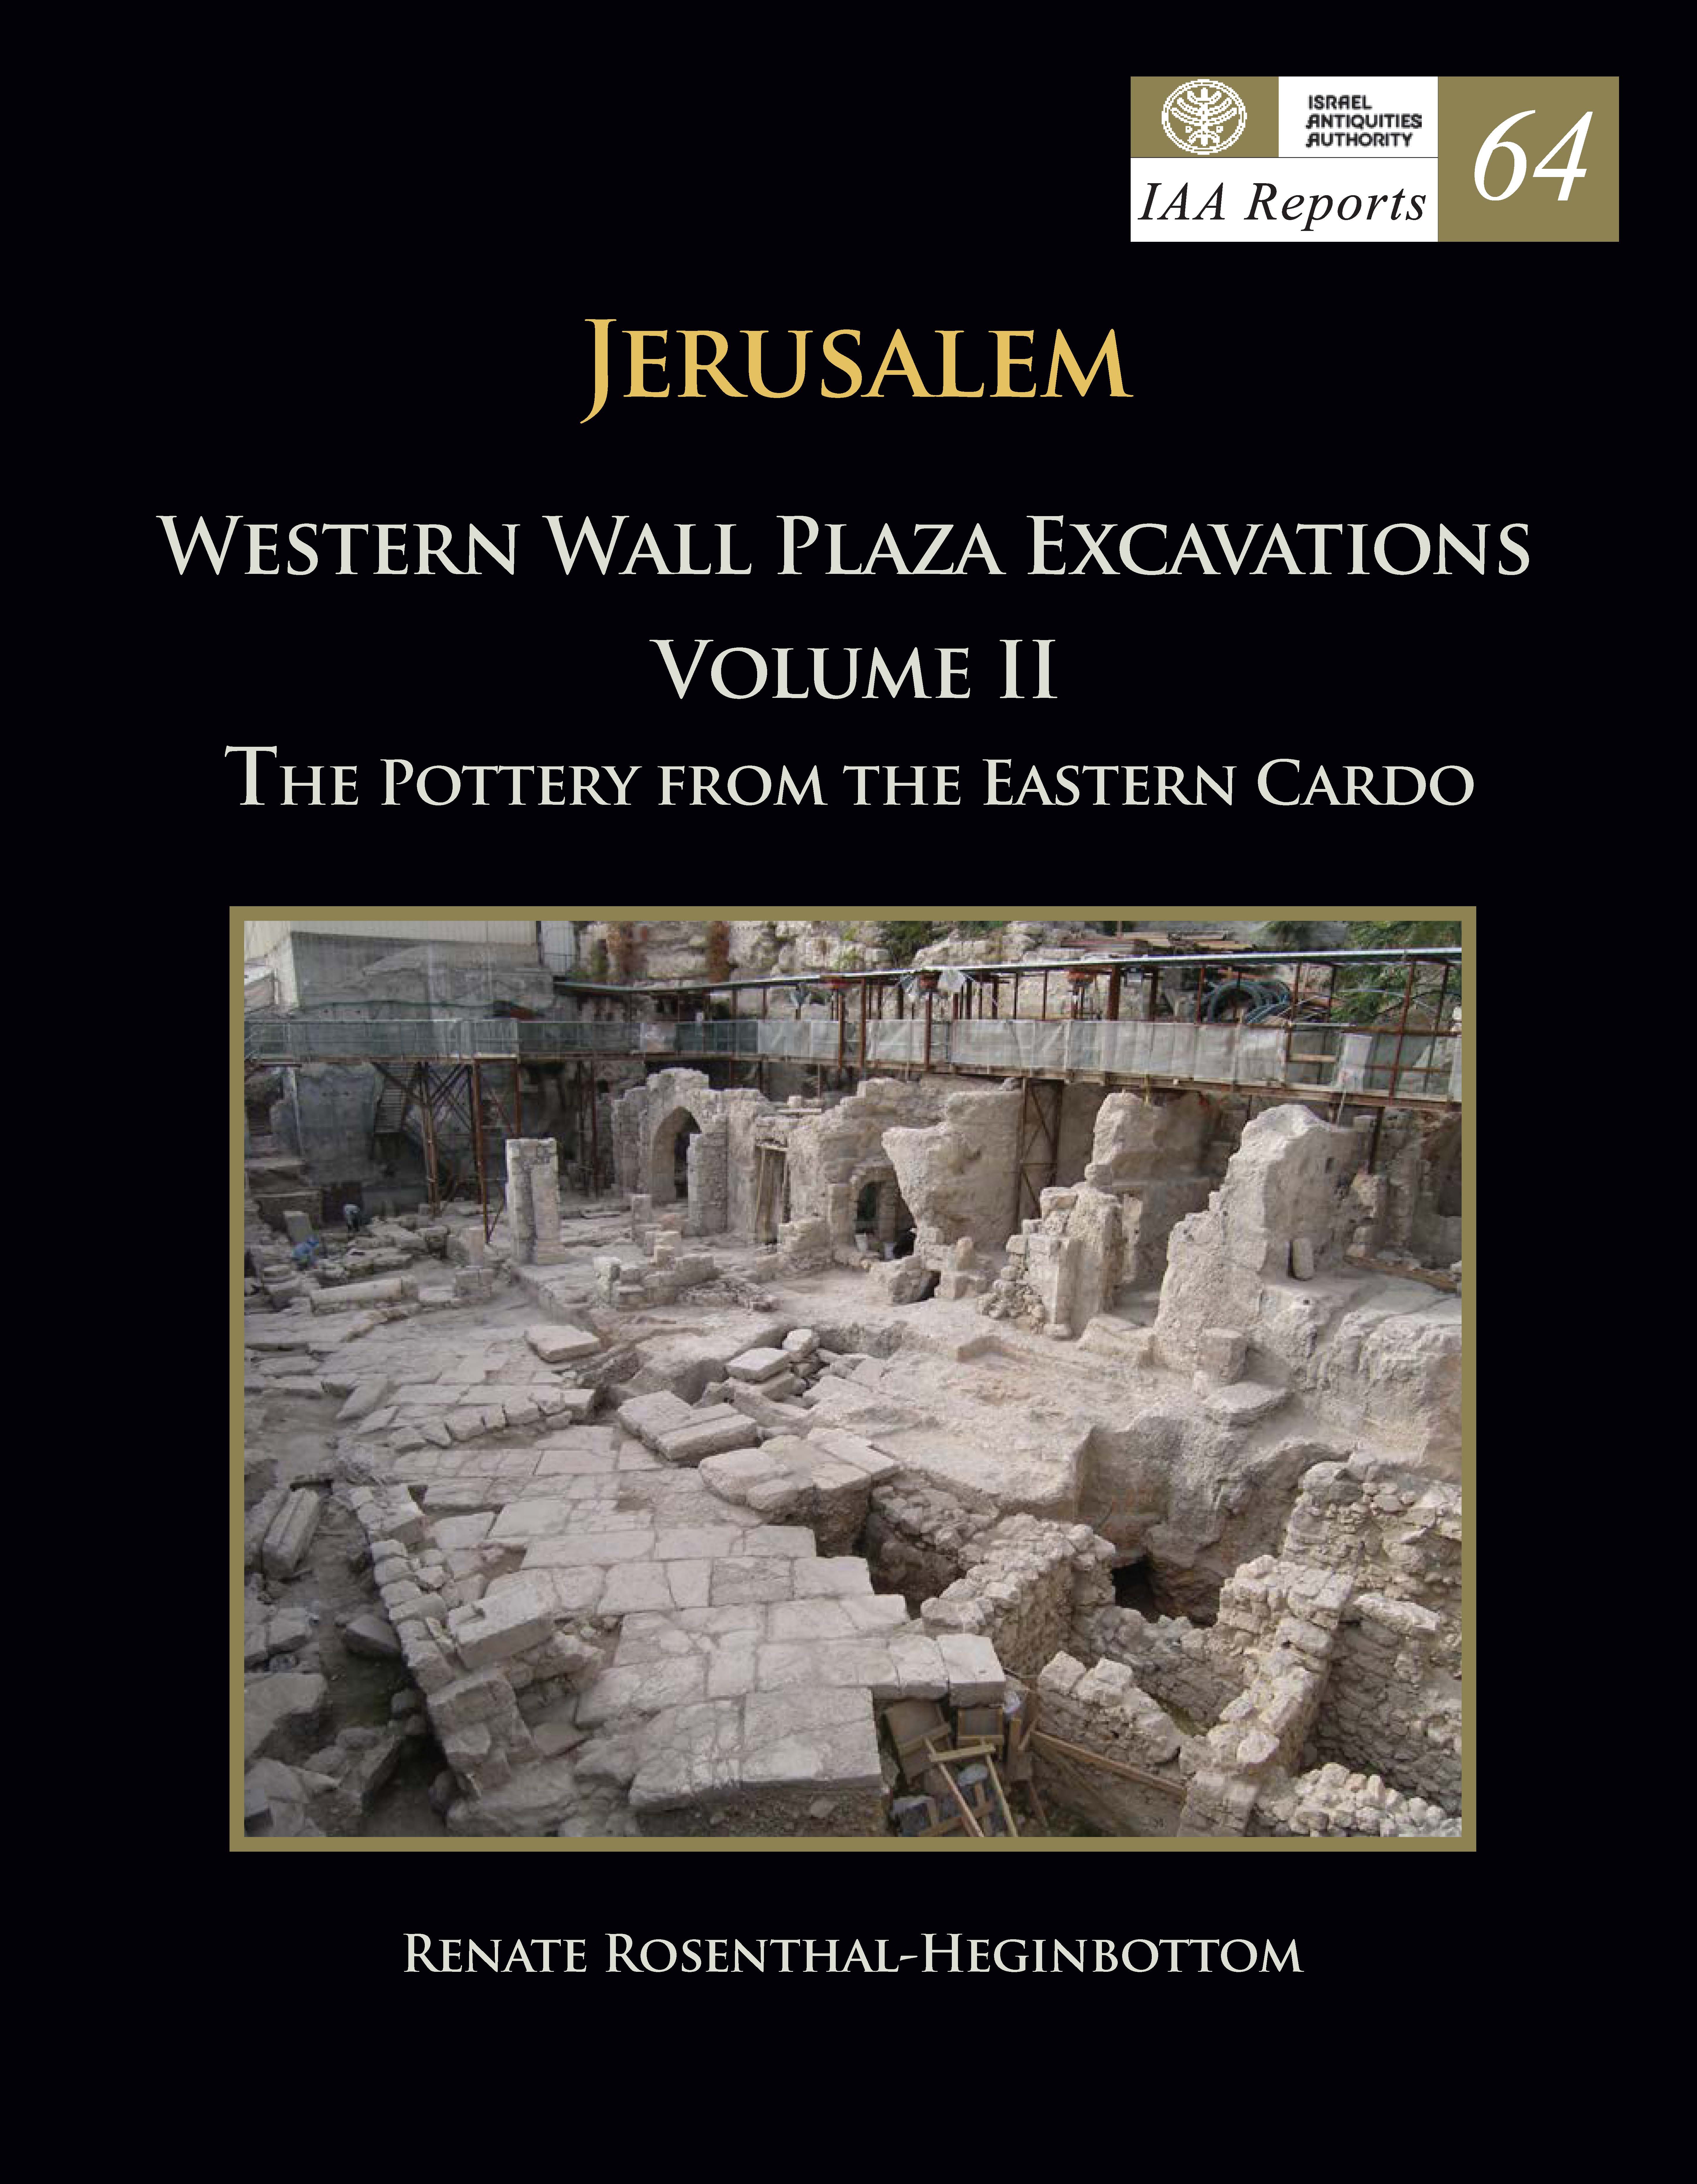 IAA Reports 64 ירושלים, חפירות רחבת הכותל המערבי כרך II. הקרמיקה מהקרדו המזרחי.